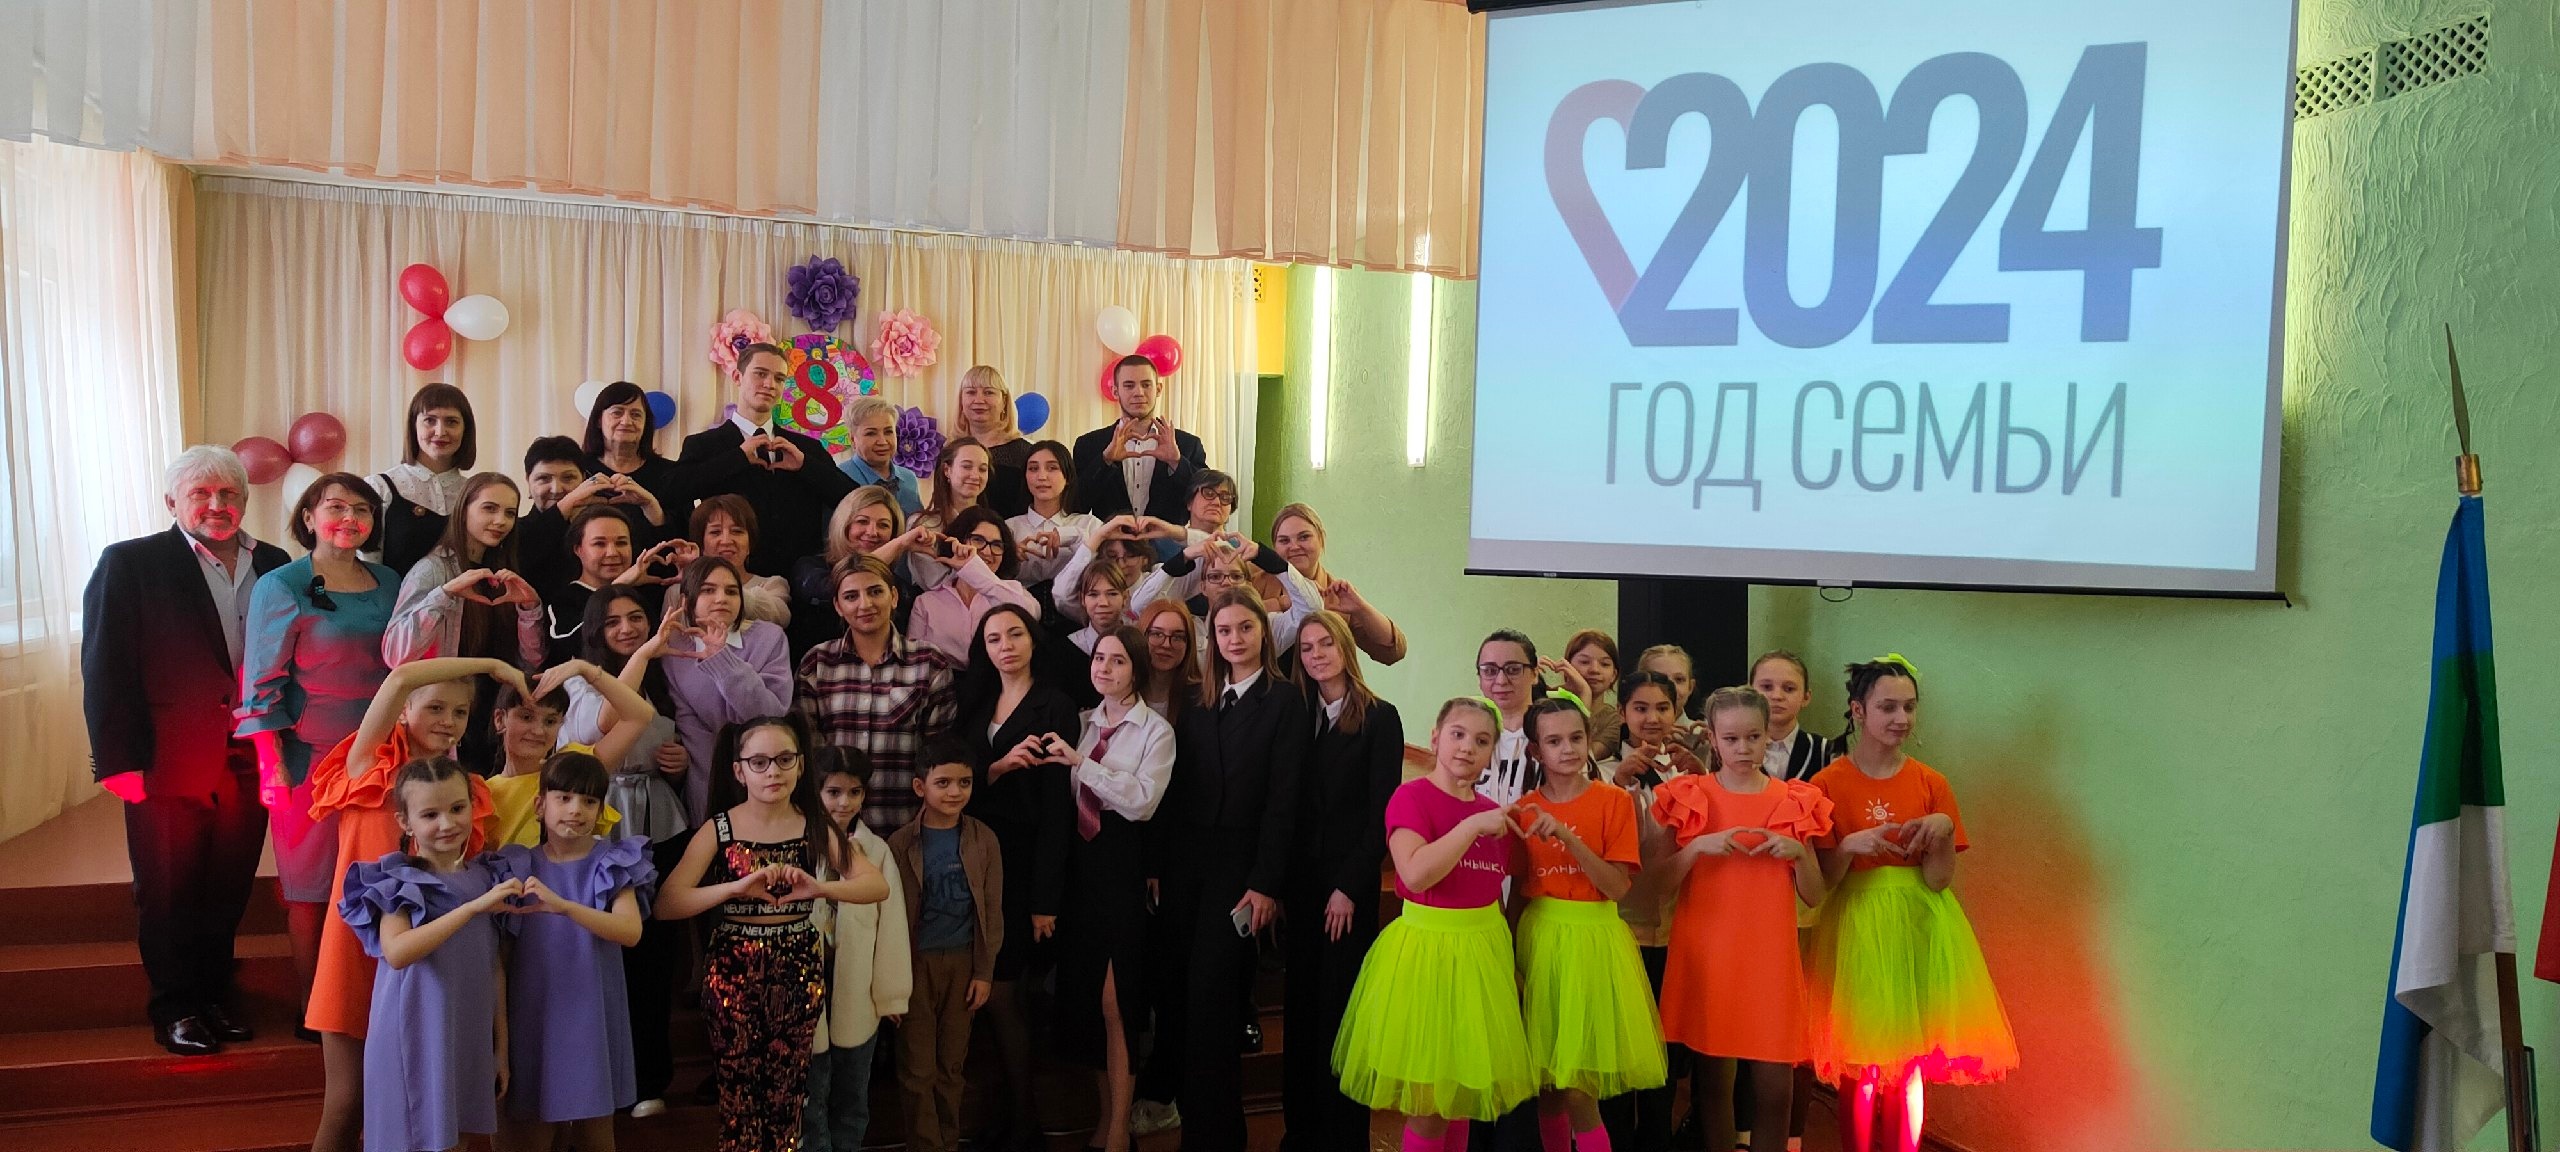 7 марта 2024 года в МОУ &amp;quot;СОШ №42&amp;quot; г. Воркуты прошел праздничный концерт, посвященный Международному женскому дню и Году семьи в России..